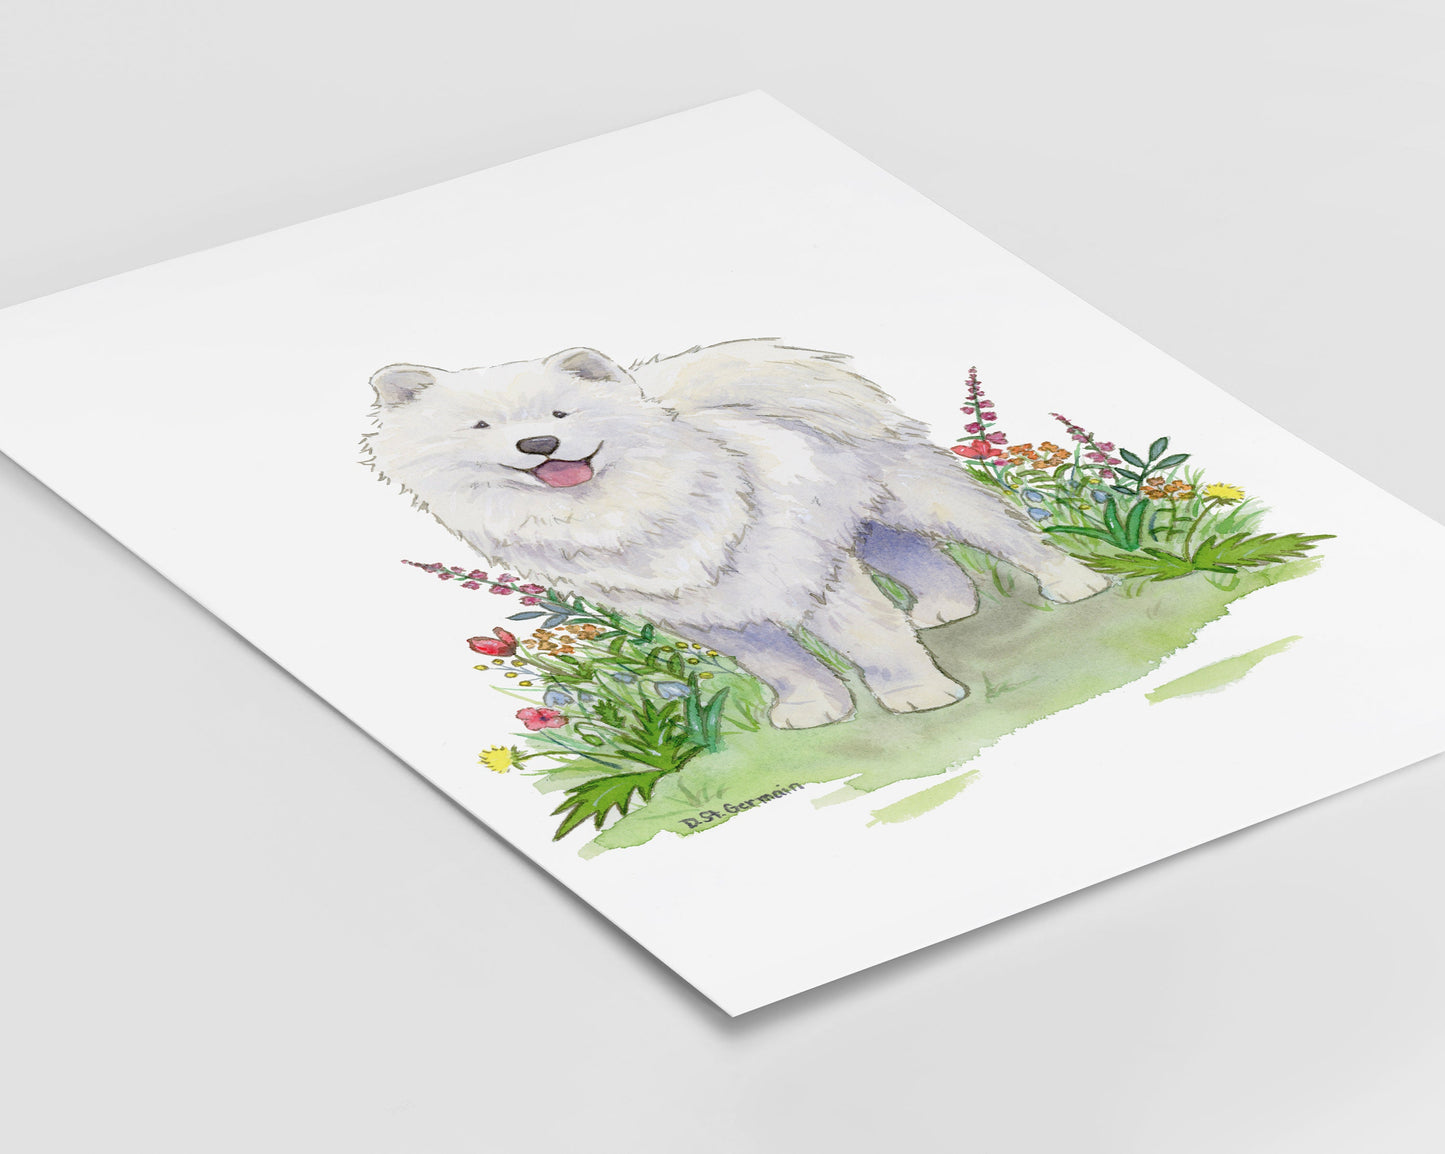 Samoyed Art, Watercolor Samoyed, Samoyed Gift, Dog Art, Dog Lover Gift, Dog Nursery Print, Husky Gift, Children's Wall Art, Nursery Decor